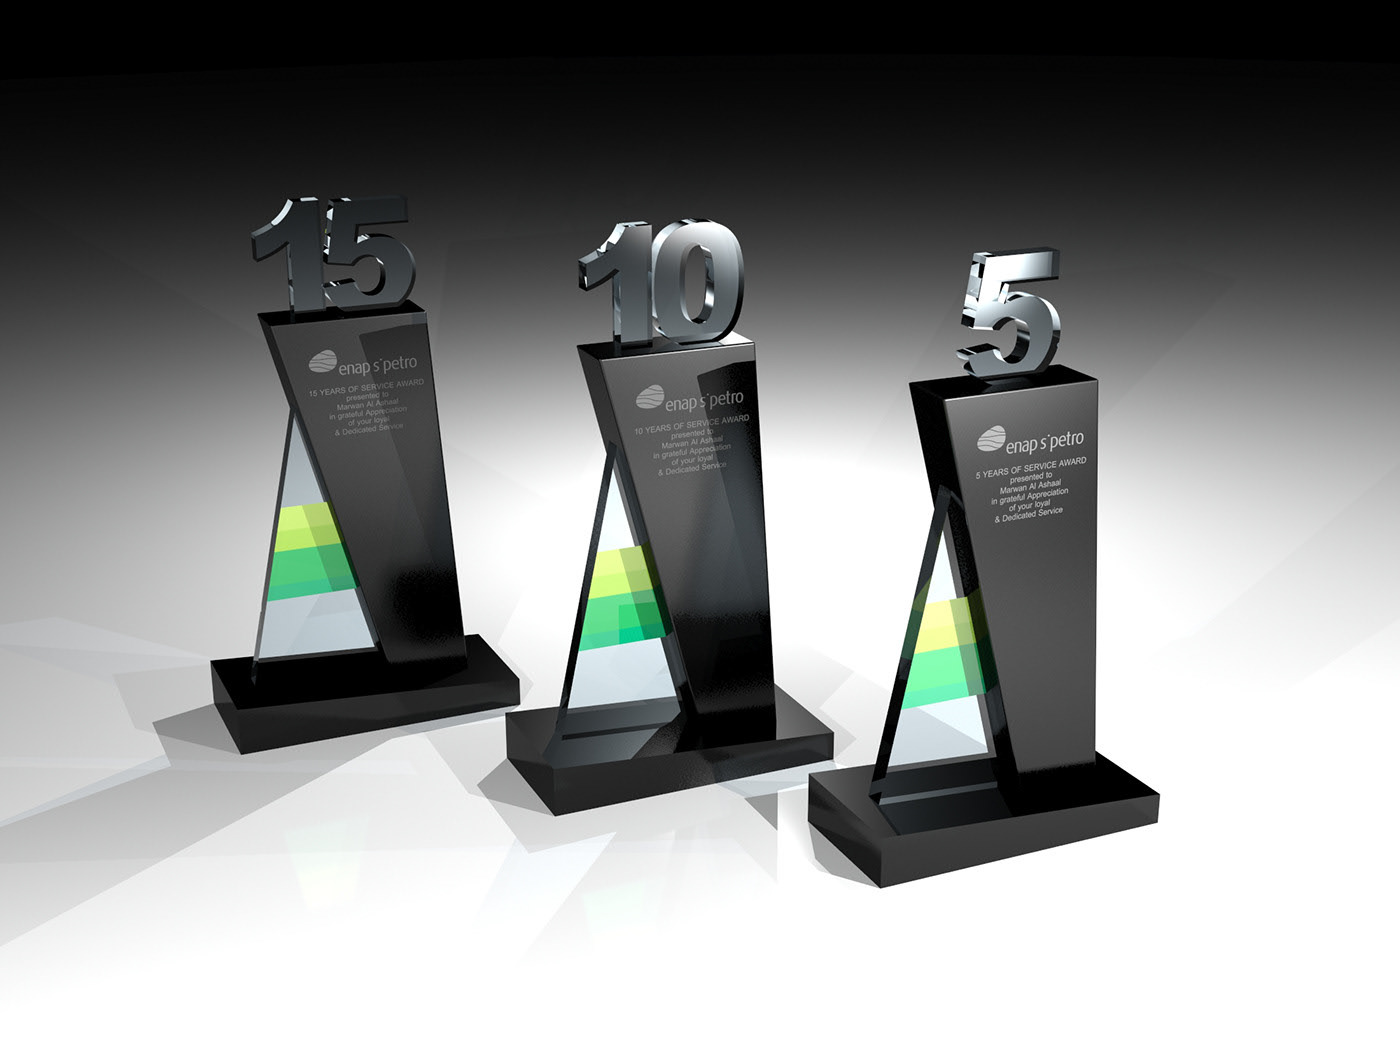 3d art 3d modeling 3ds max Creative Design custom made design Enap giveaways trophy trophy design